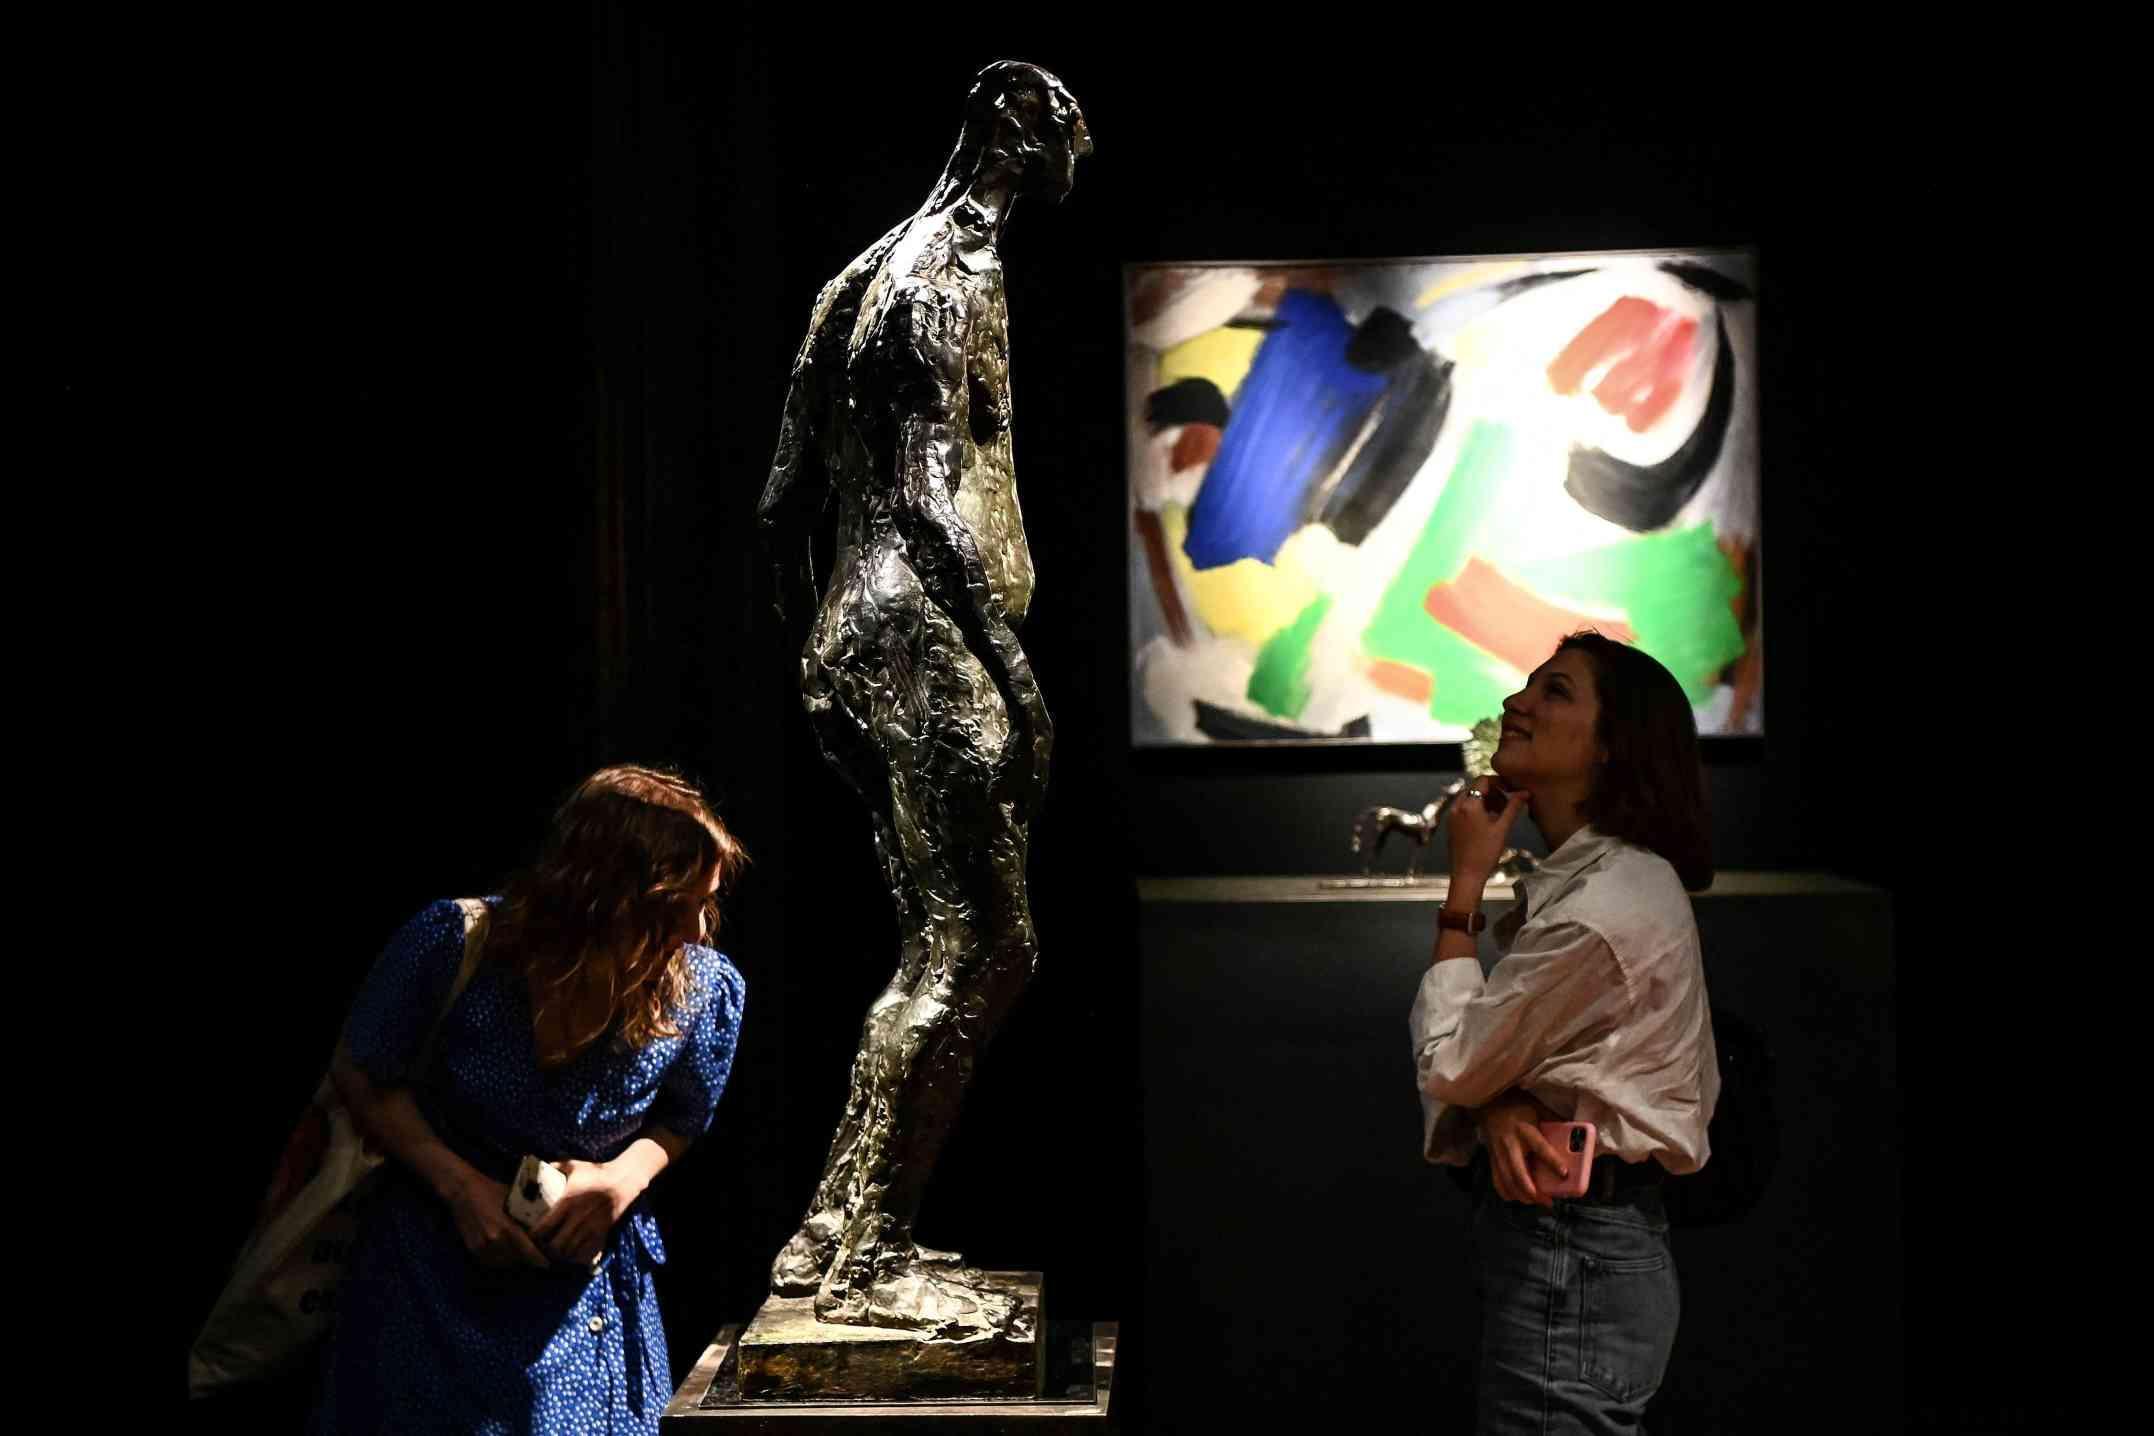 De kunstcollectie van Depardieu wordt verkocht voor 4 miljoen euro